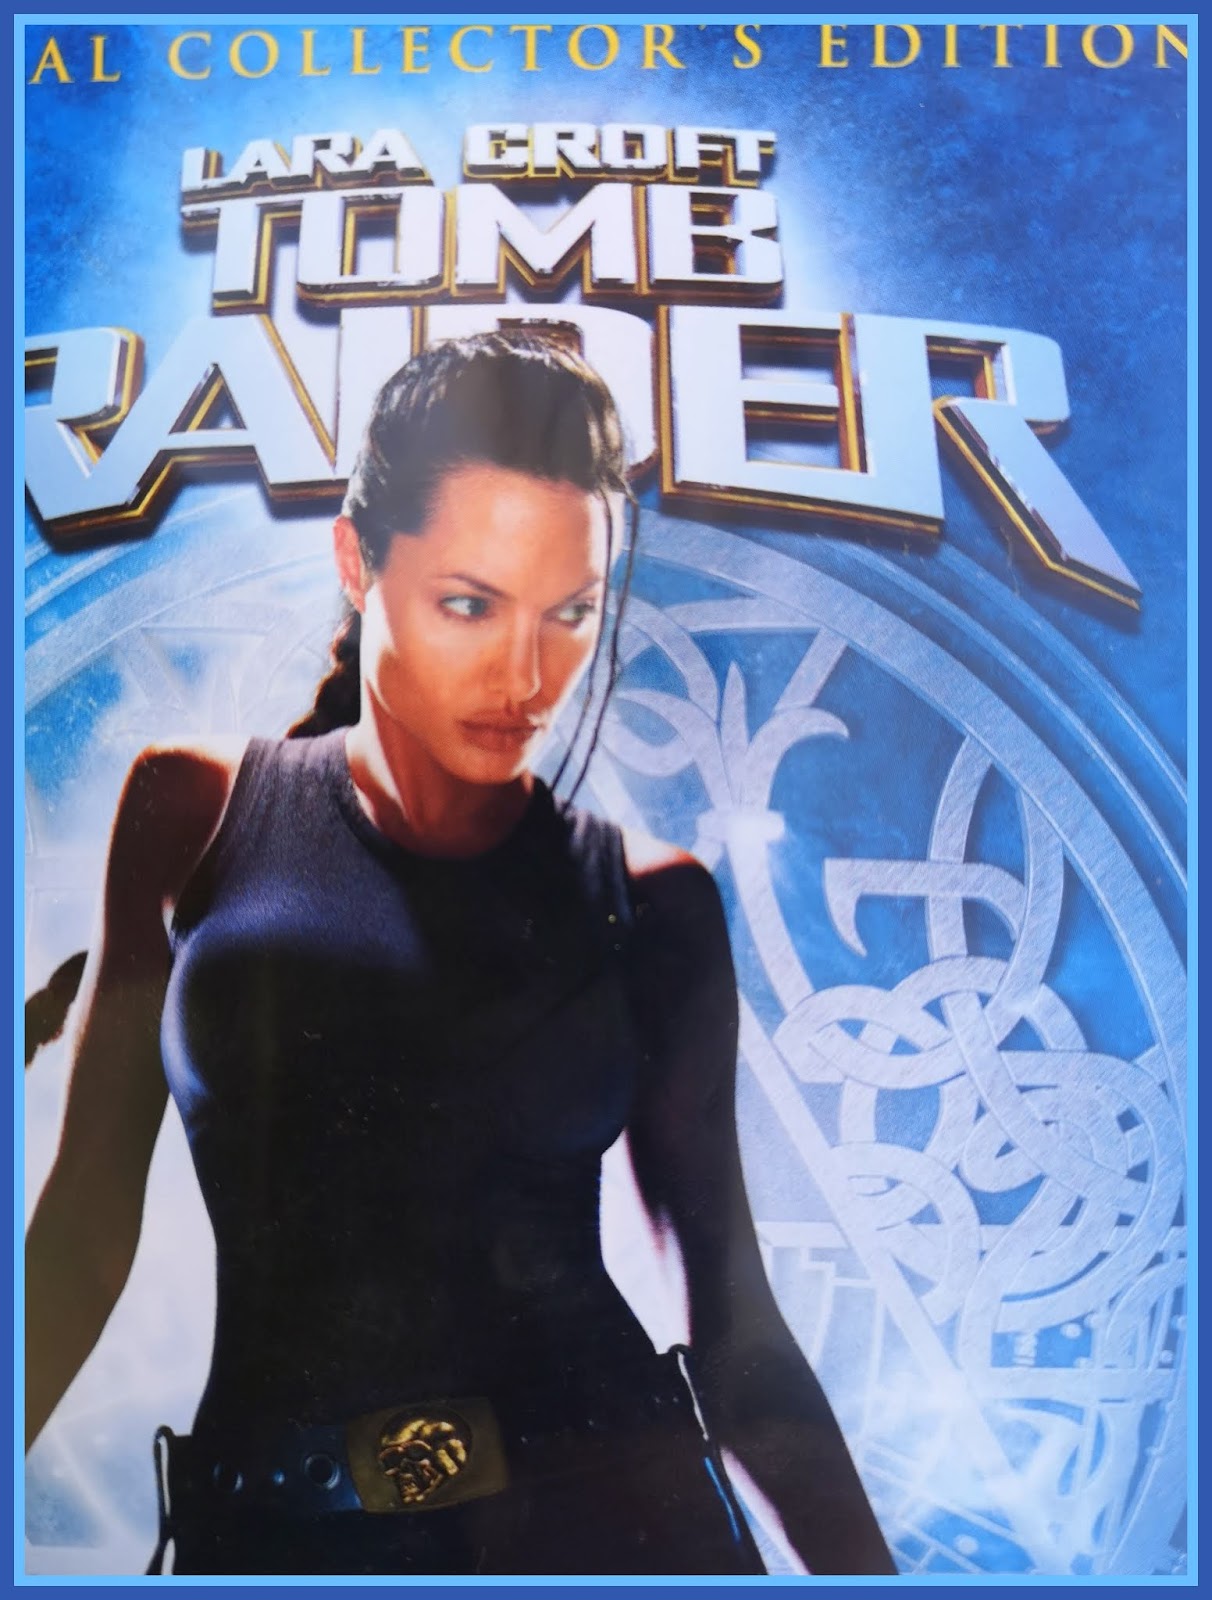 Tomb Raider Shemale